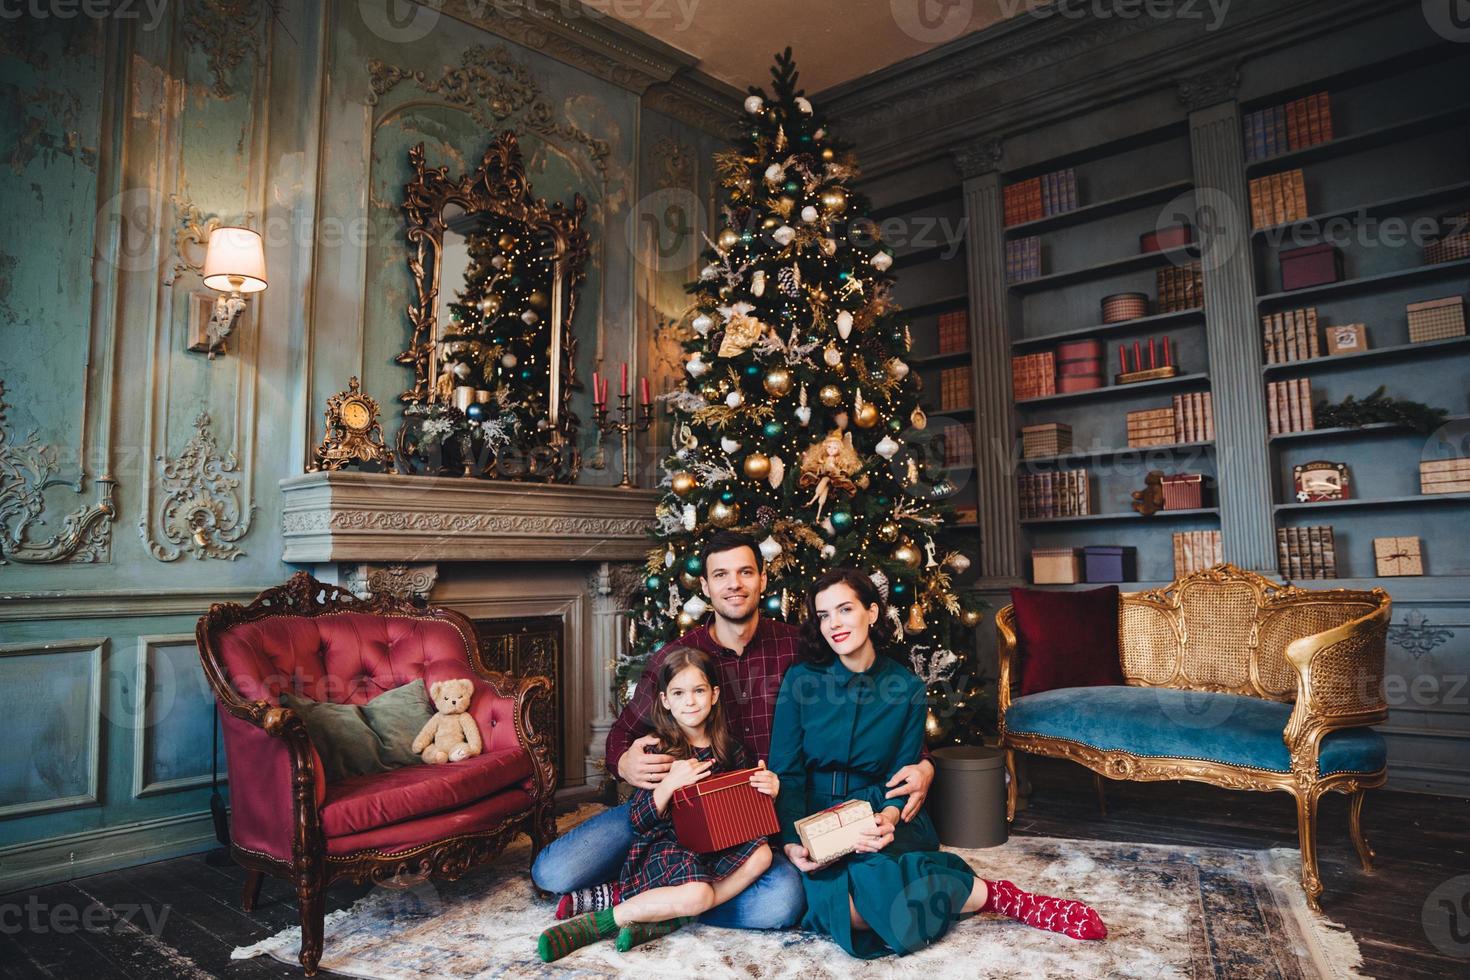 la familia amigable se sienta cerca del árbol de navidad decorado, se abrazan, sostienen regalos empacados, disfrutan de una atmósfera majestuosa. padre, madre e hija cerca del árbol de año nuevo en la sala de estar. concepto festivo foto